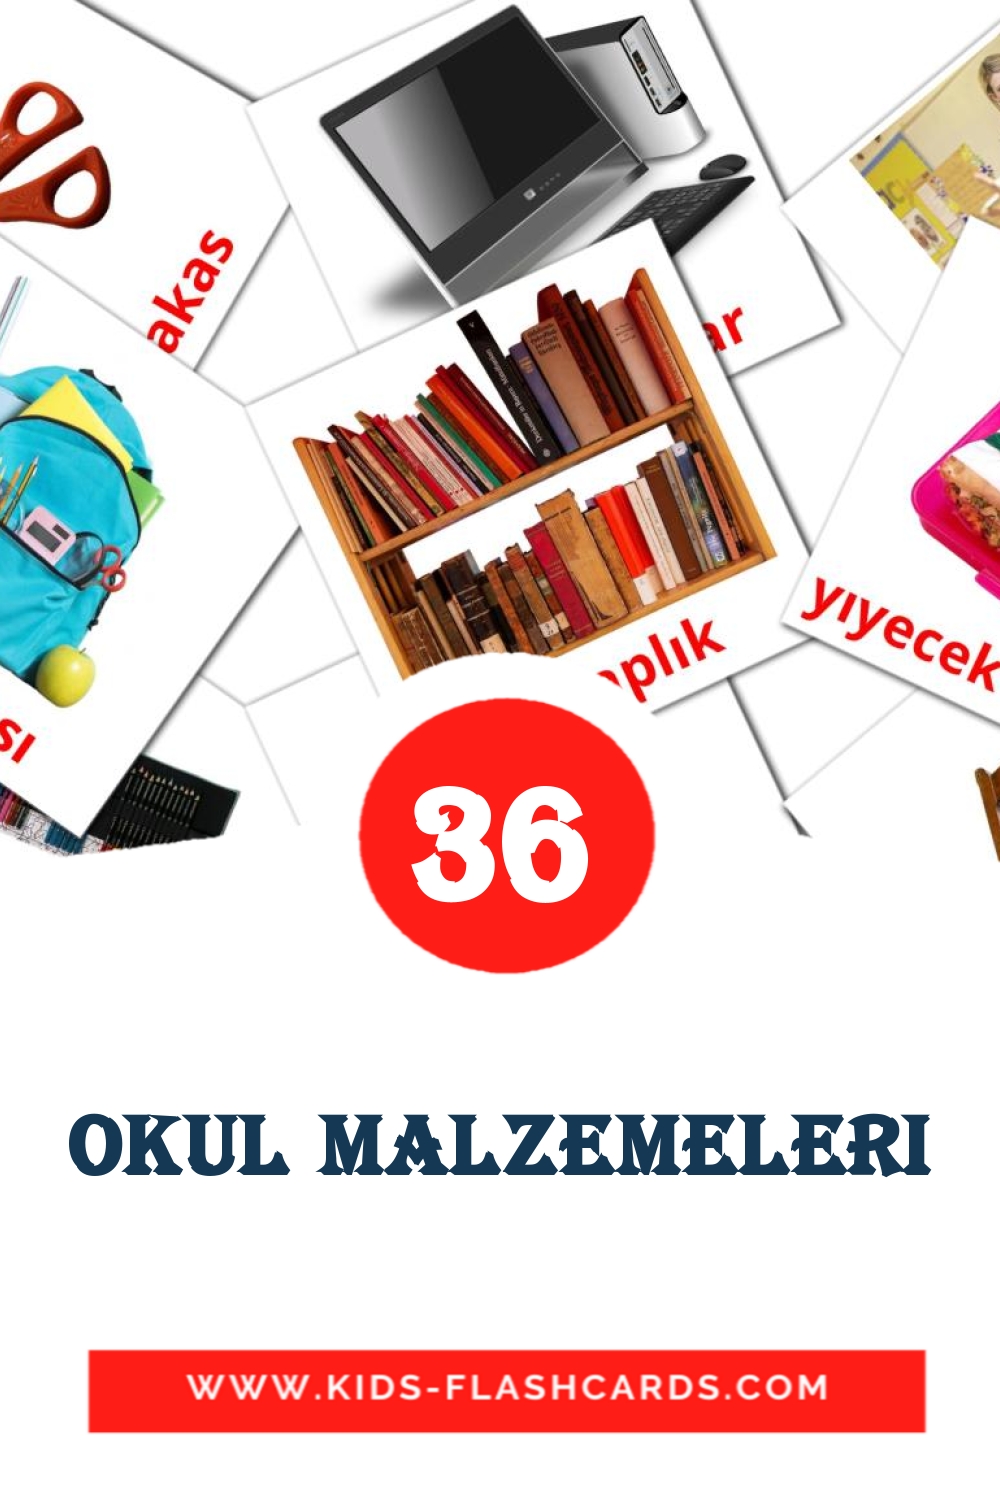 36 Okul malzemeleri Bildkarten für den Kindergarten auf Türkisch